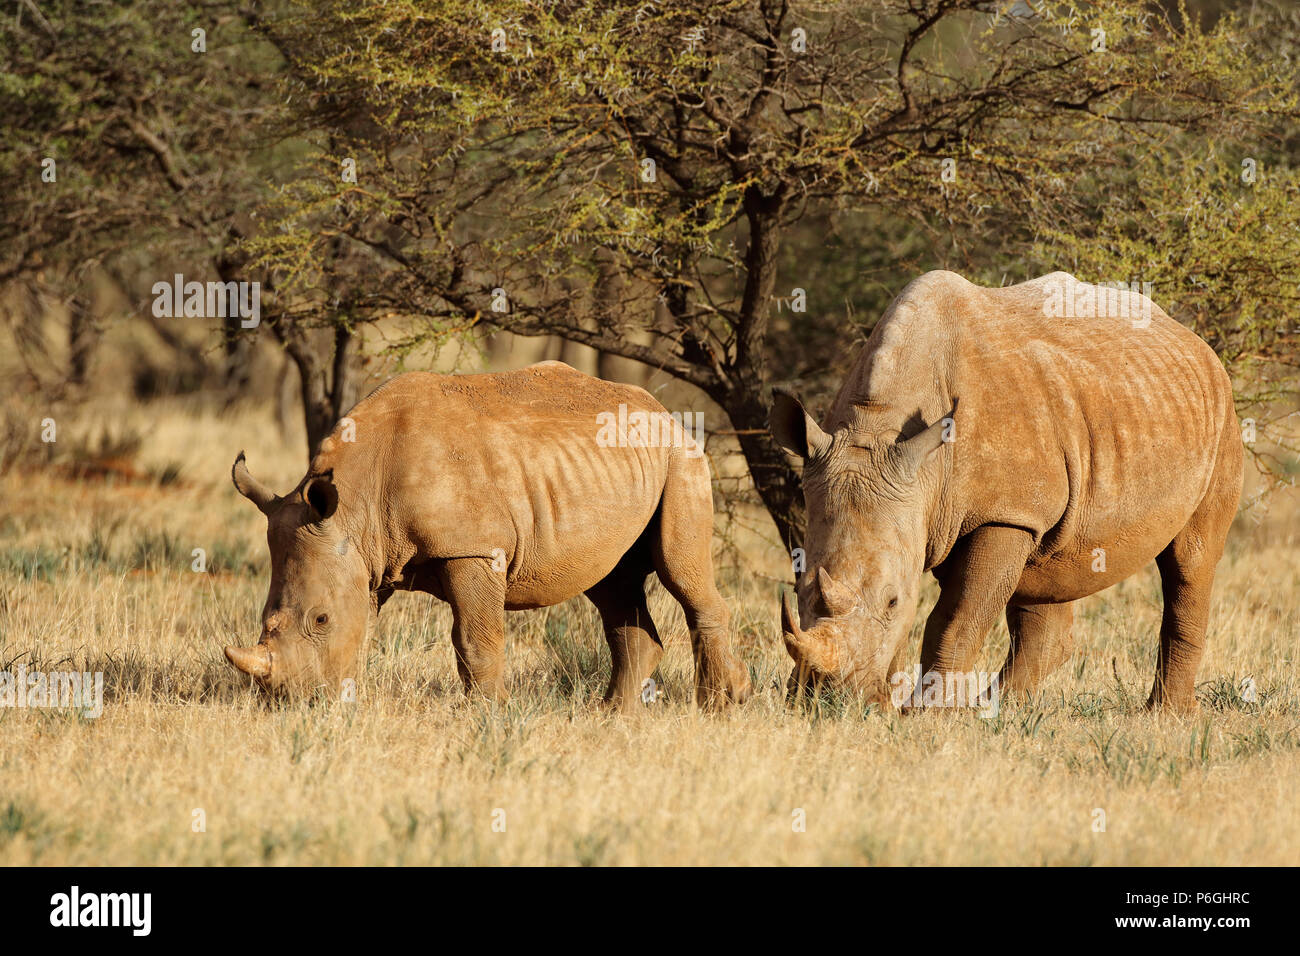 White rhinoceros (Ceratotherium simum) with calf in natural habitat, South Africa Stock Photo